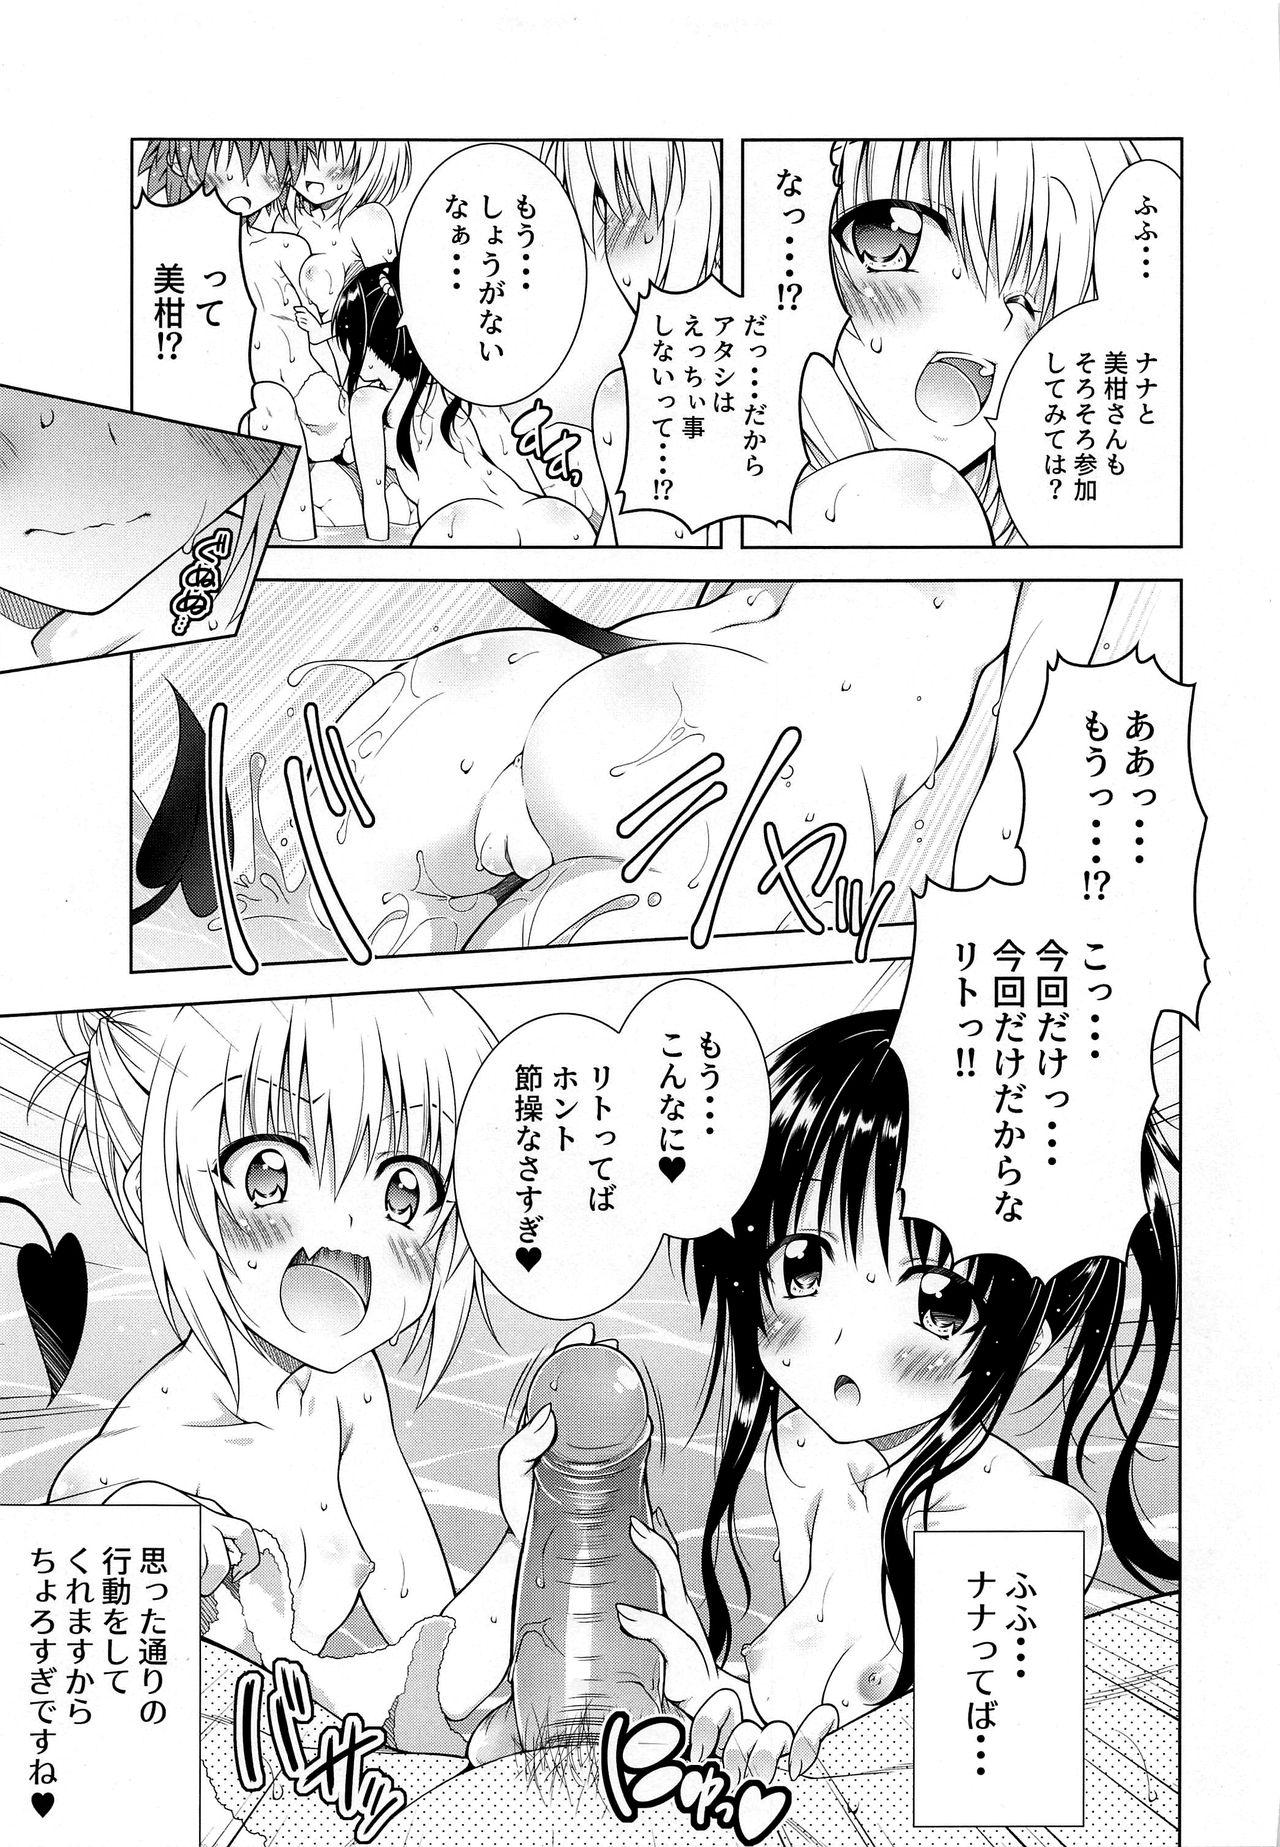 Petite Girl Porn Rito-san no Harem Seikatsu 9 - To love ru Sensual - Page 11